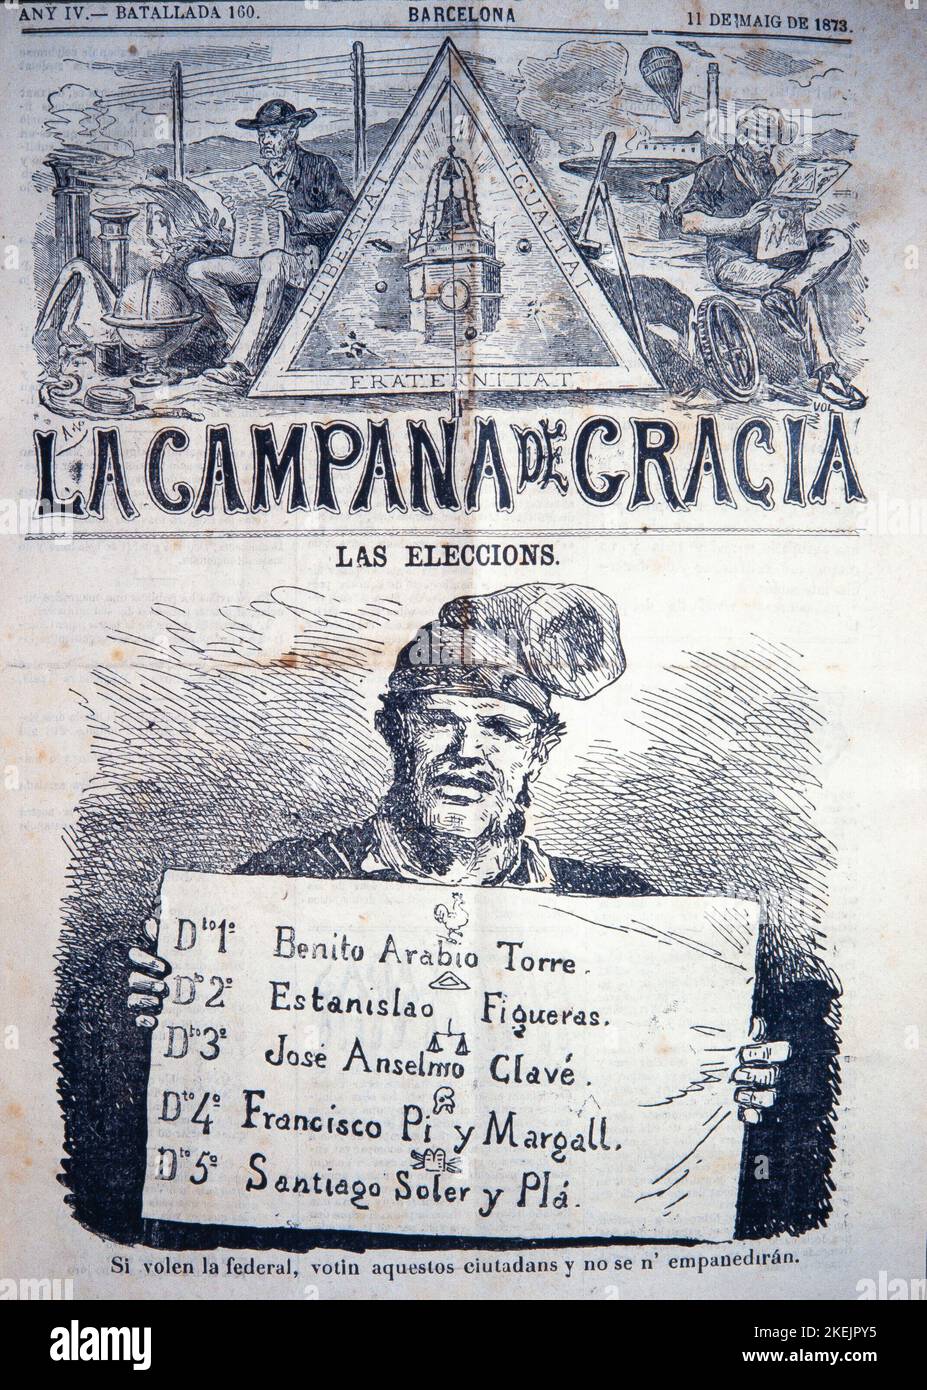 CAMPANA DE GRACIA 11 DE MAYO DE 1873. REPUBLICA FEDERAL. MUSEO DE HISTORIA  DE LA CIUDAD DE BARCELONA Stock Photo - Alamy